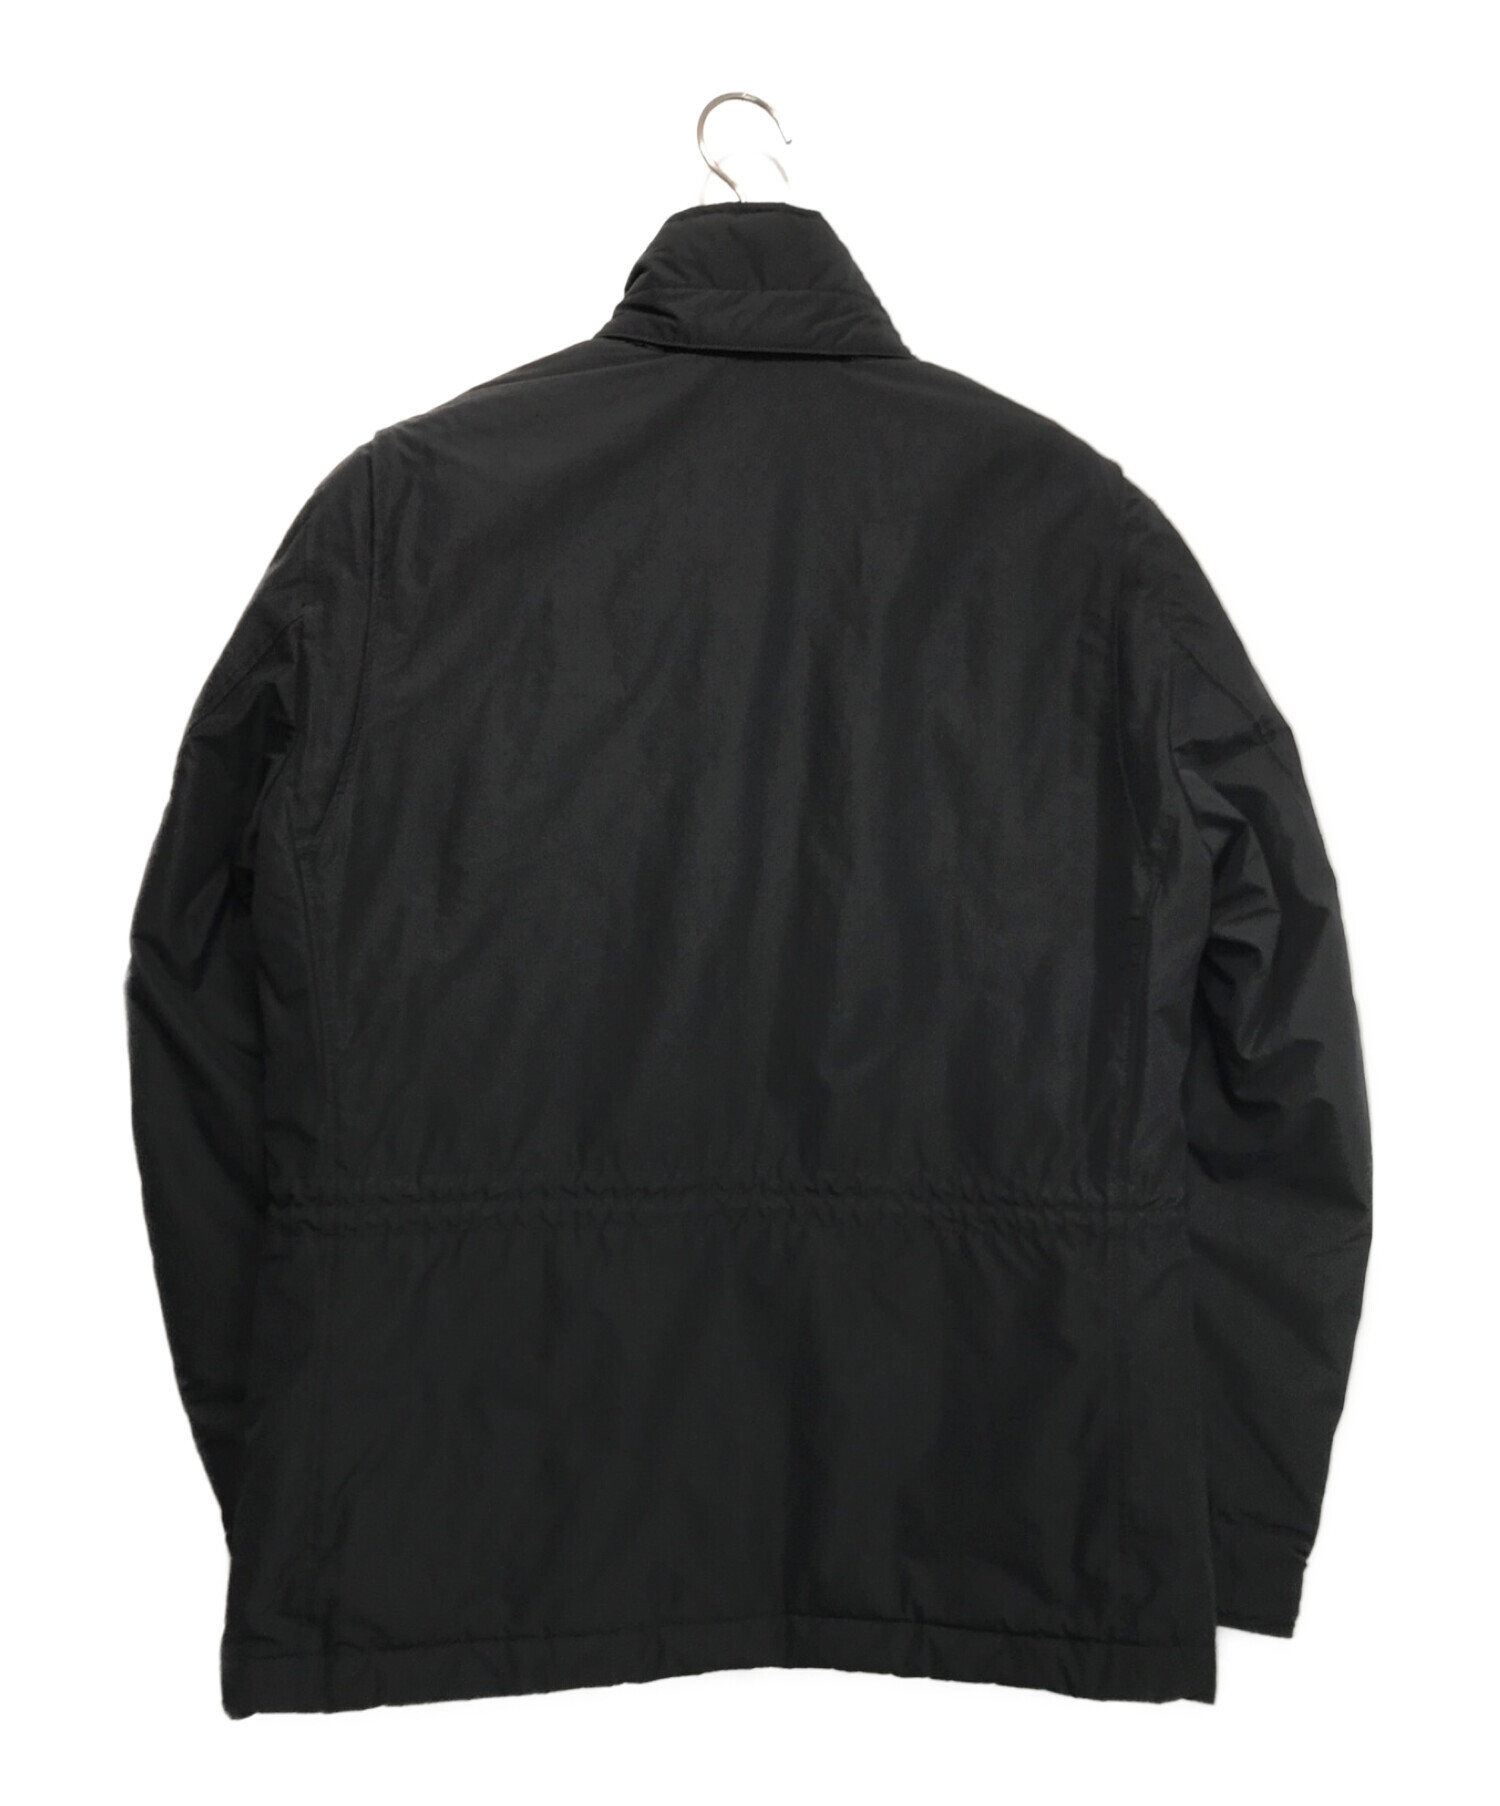 STONE ISLAND ストーンアイランド フィールドジャケット ブラック サイズ:M